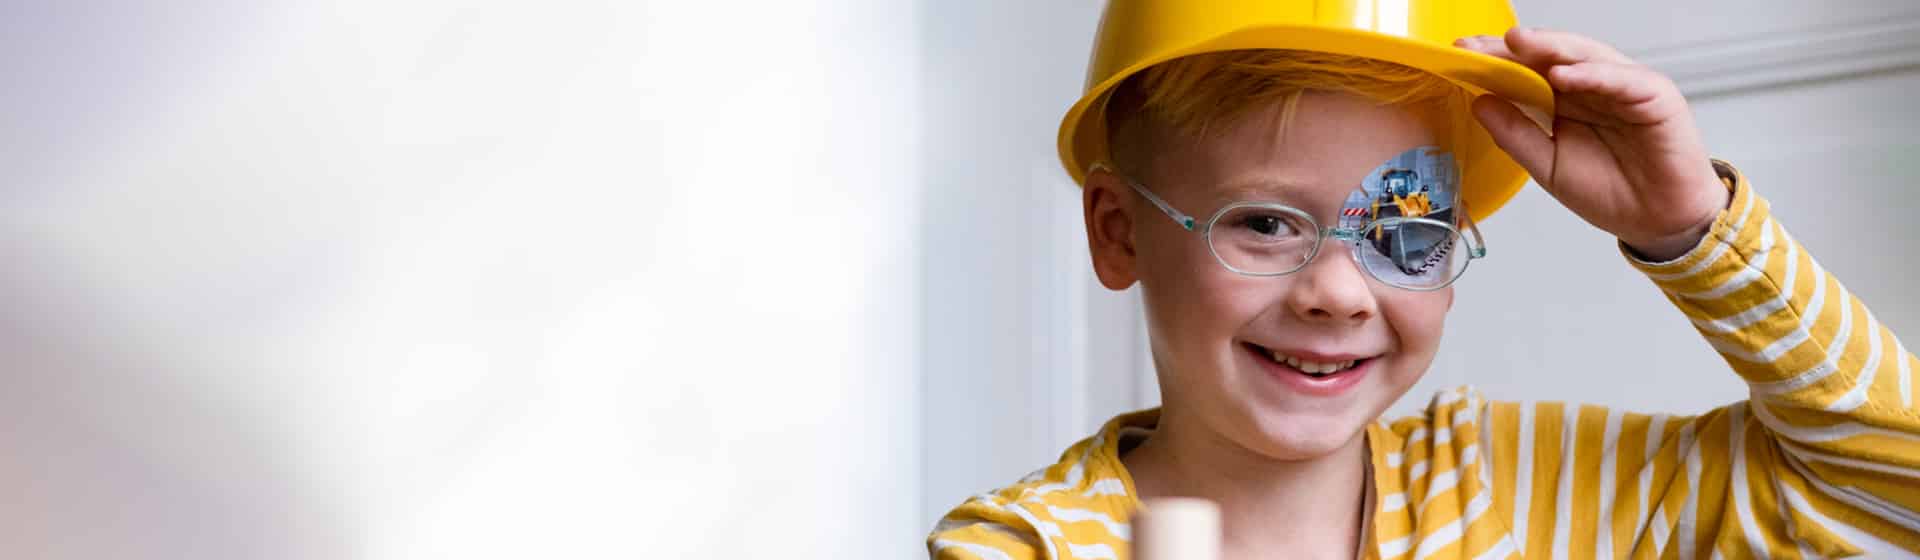 Junge mit Bauarbeiterhelm und Augenpflaster Motiv Bagger lächelt in die Kamera